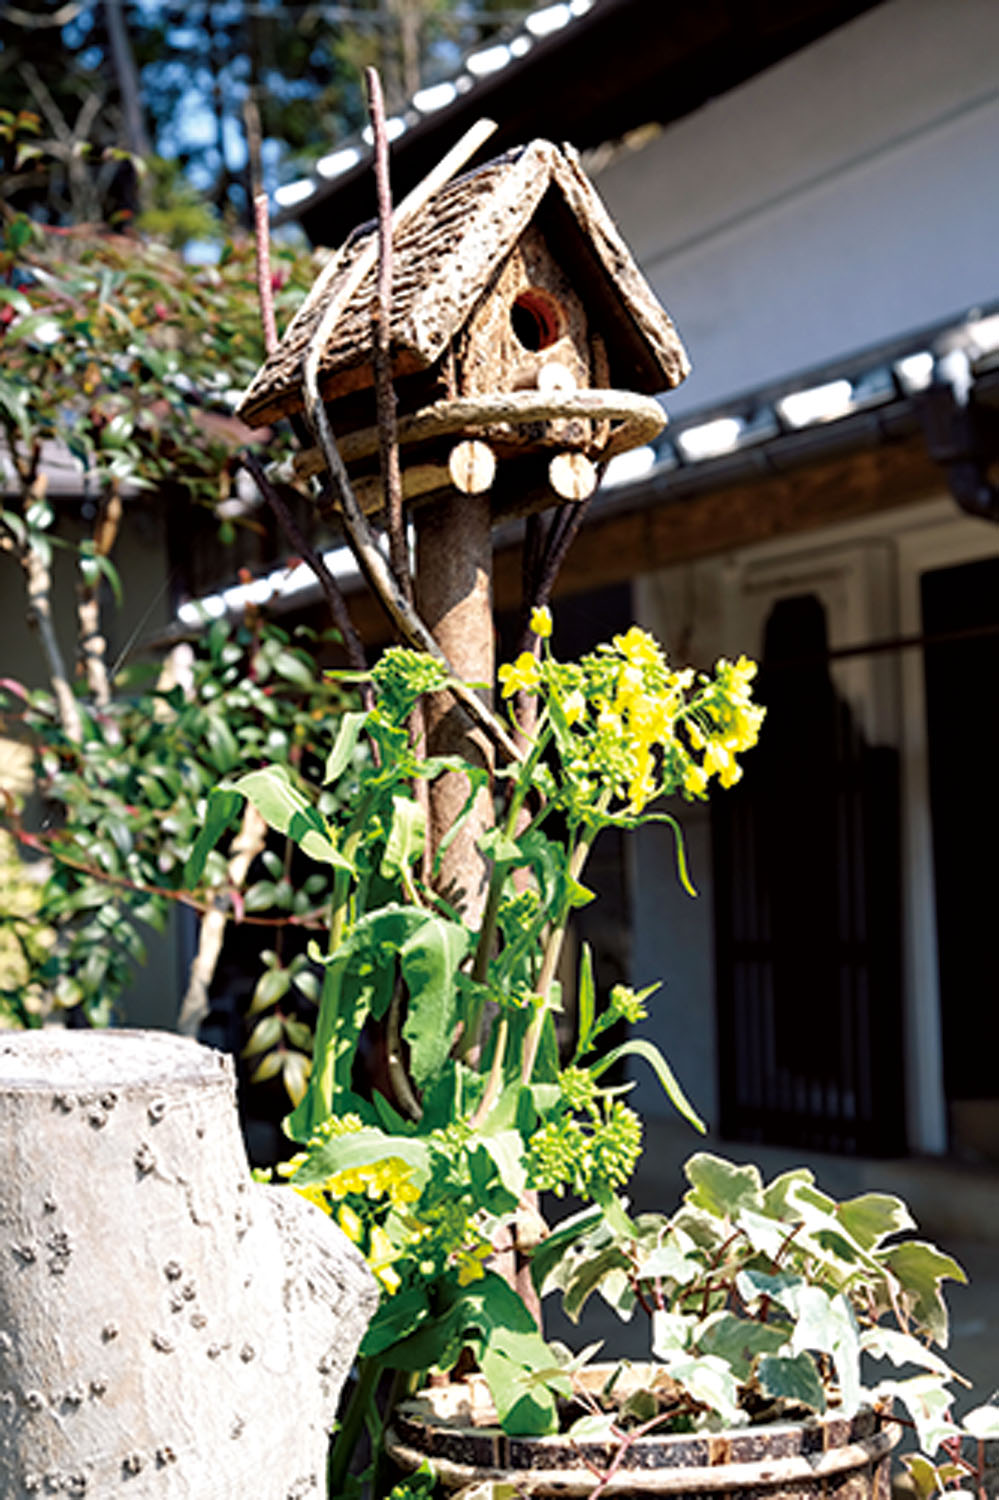 小倉集落の民家の前にかわいらしいポスト、と思ったら鳥さんの巣箱でした。